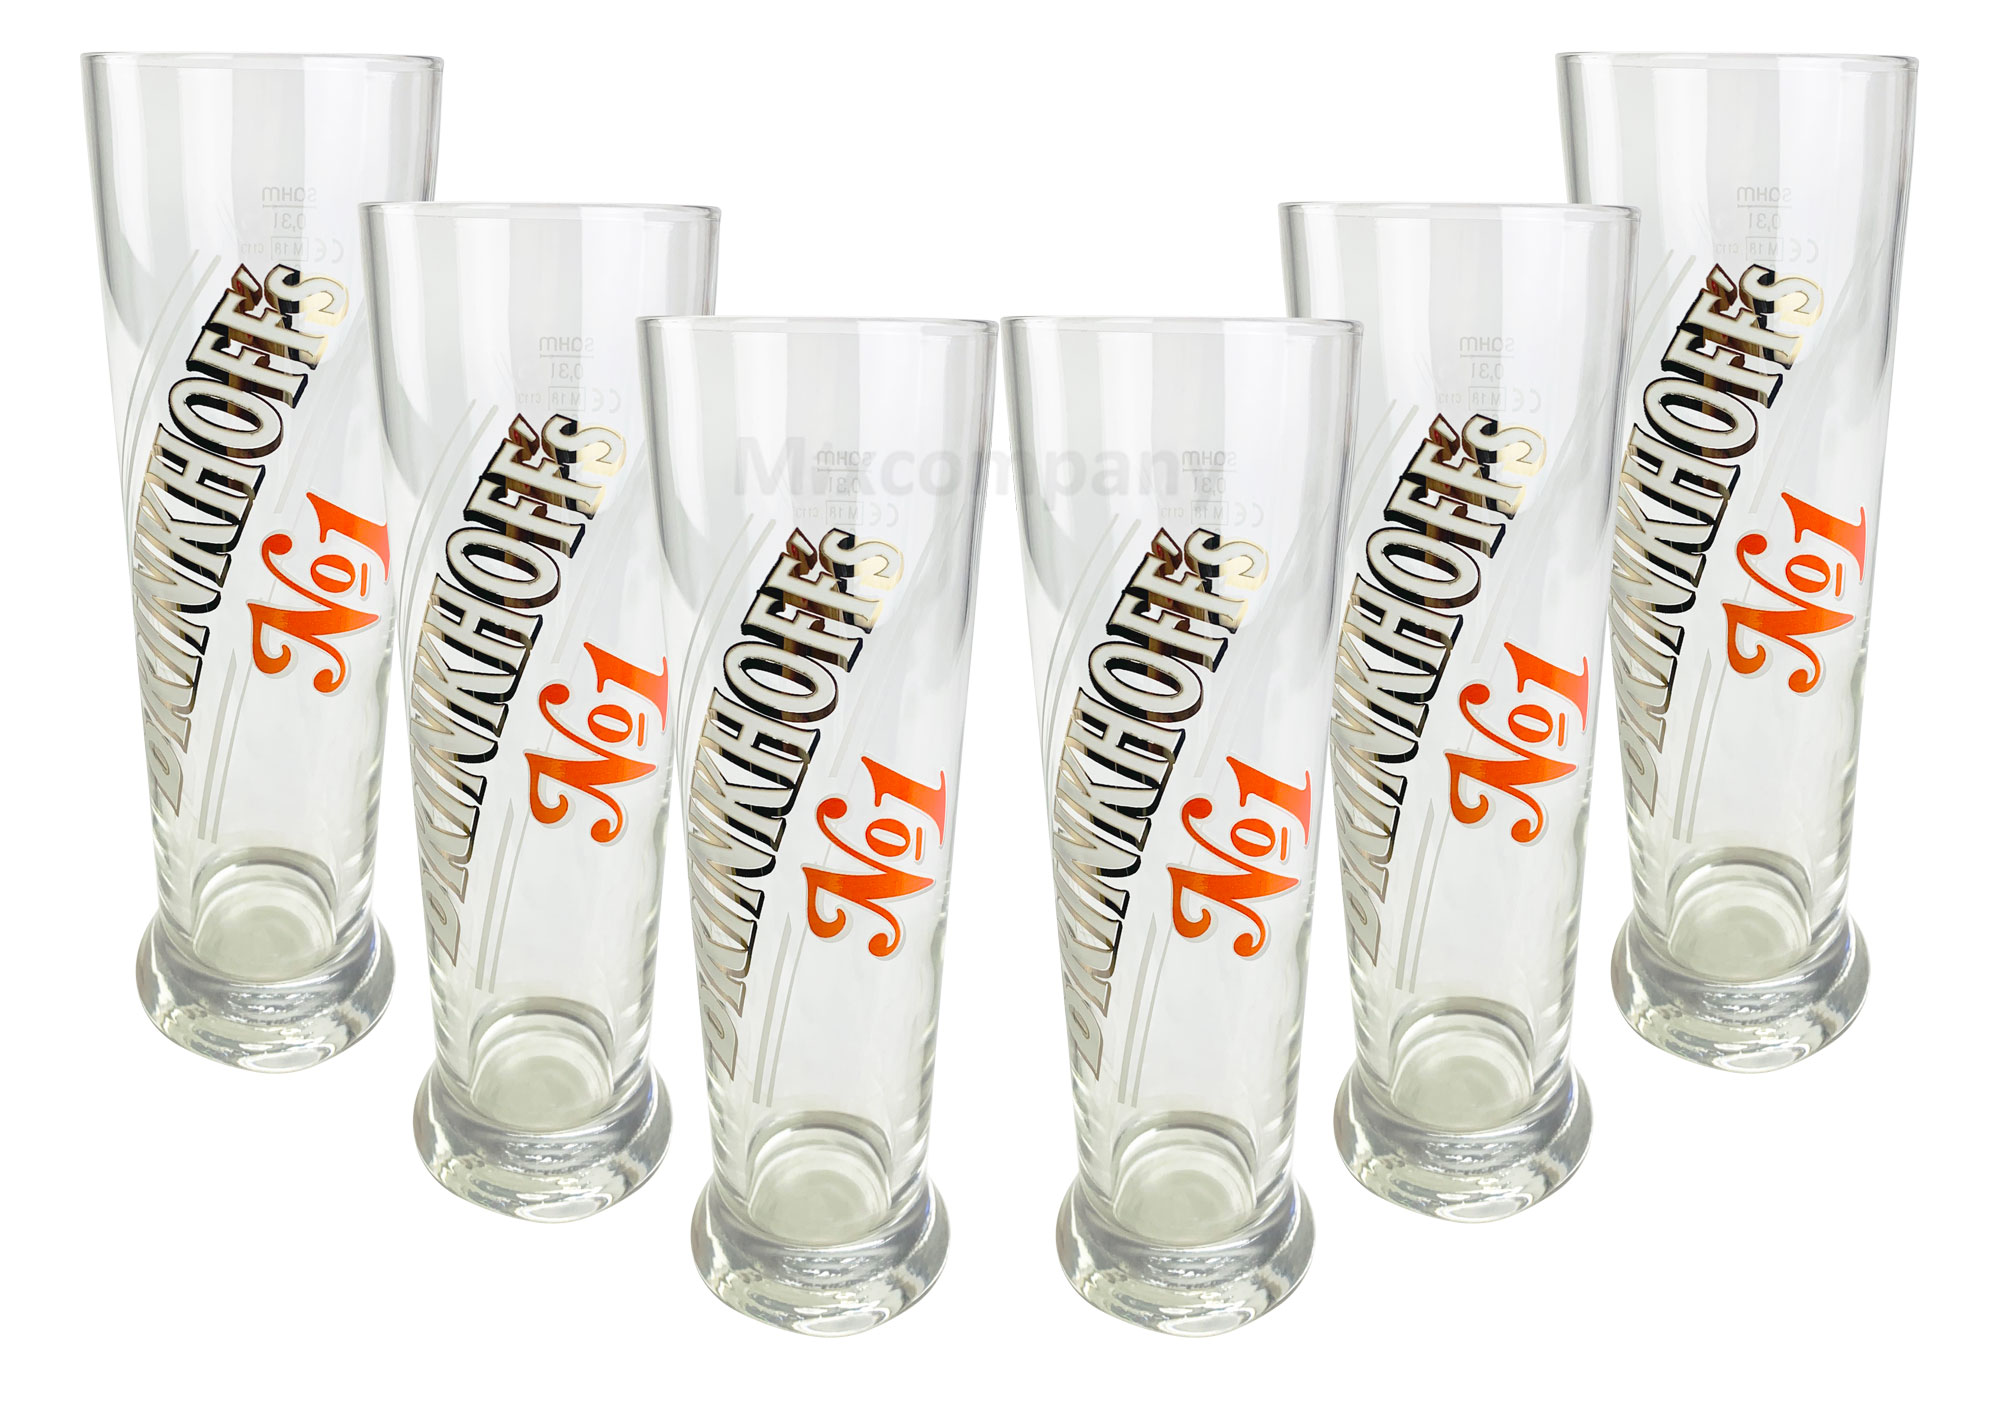 Brinkhoffs No1 Glas Set - 6x Gläser 0,2l geeicht selten Bar Bier Biergläser